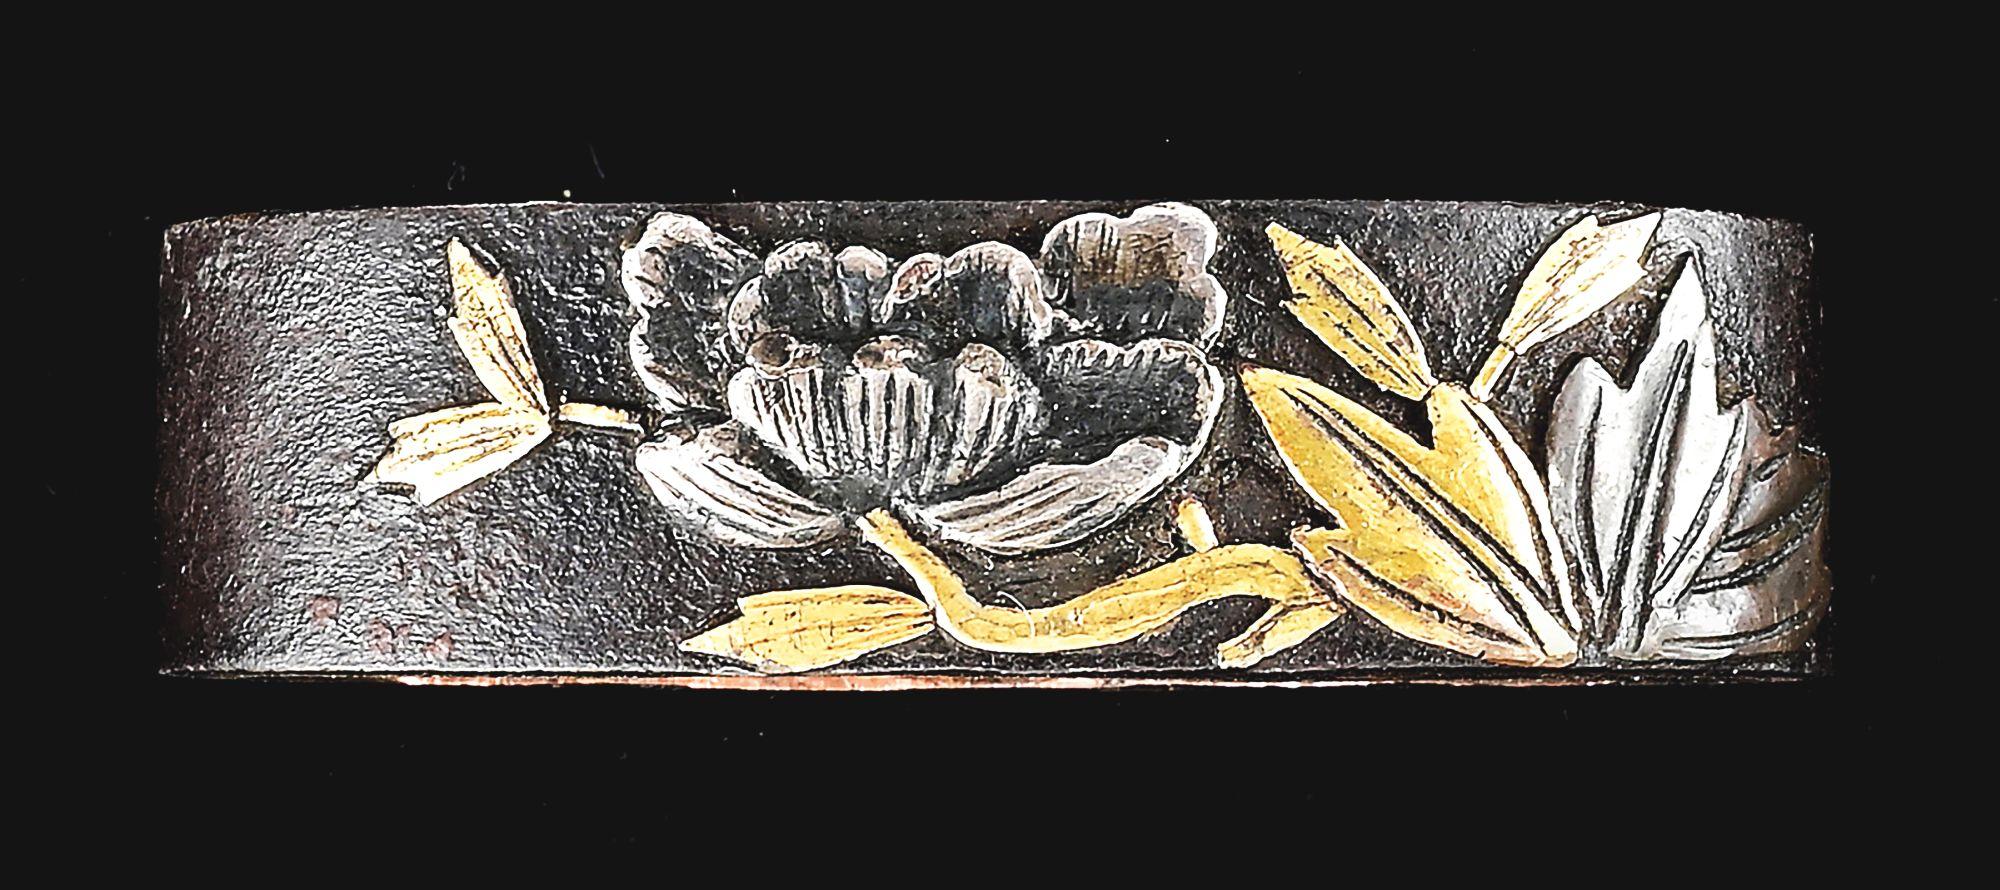 A GOOD SUEKOTO KATANA SIGNED BISHU JU OSAFUNE KIYOMITSU, CIRCA 1534 (TENMON 3), WITH NTHK-NPO KANTEI